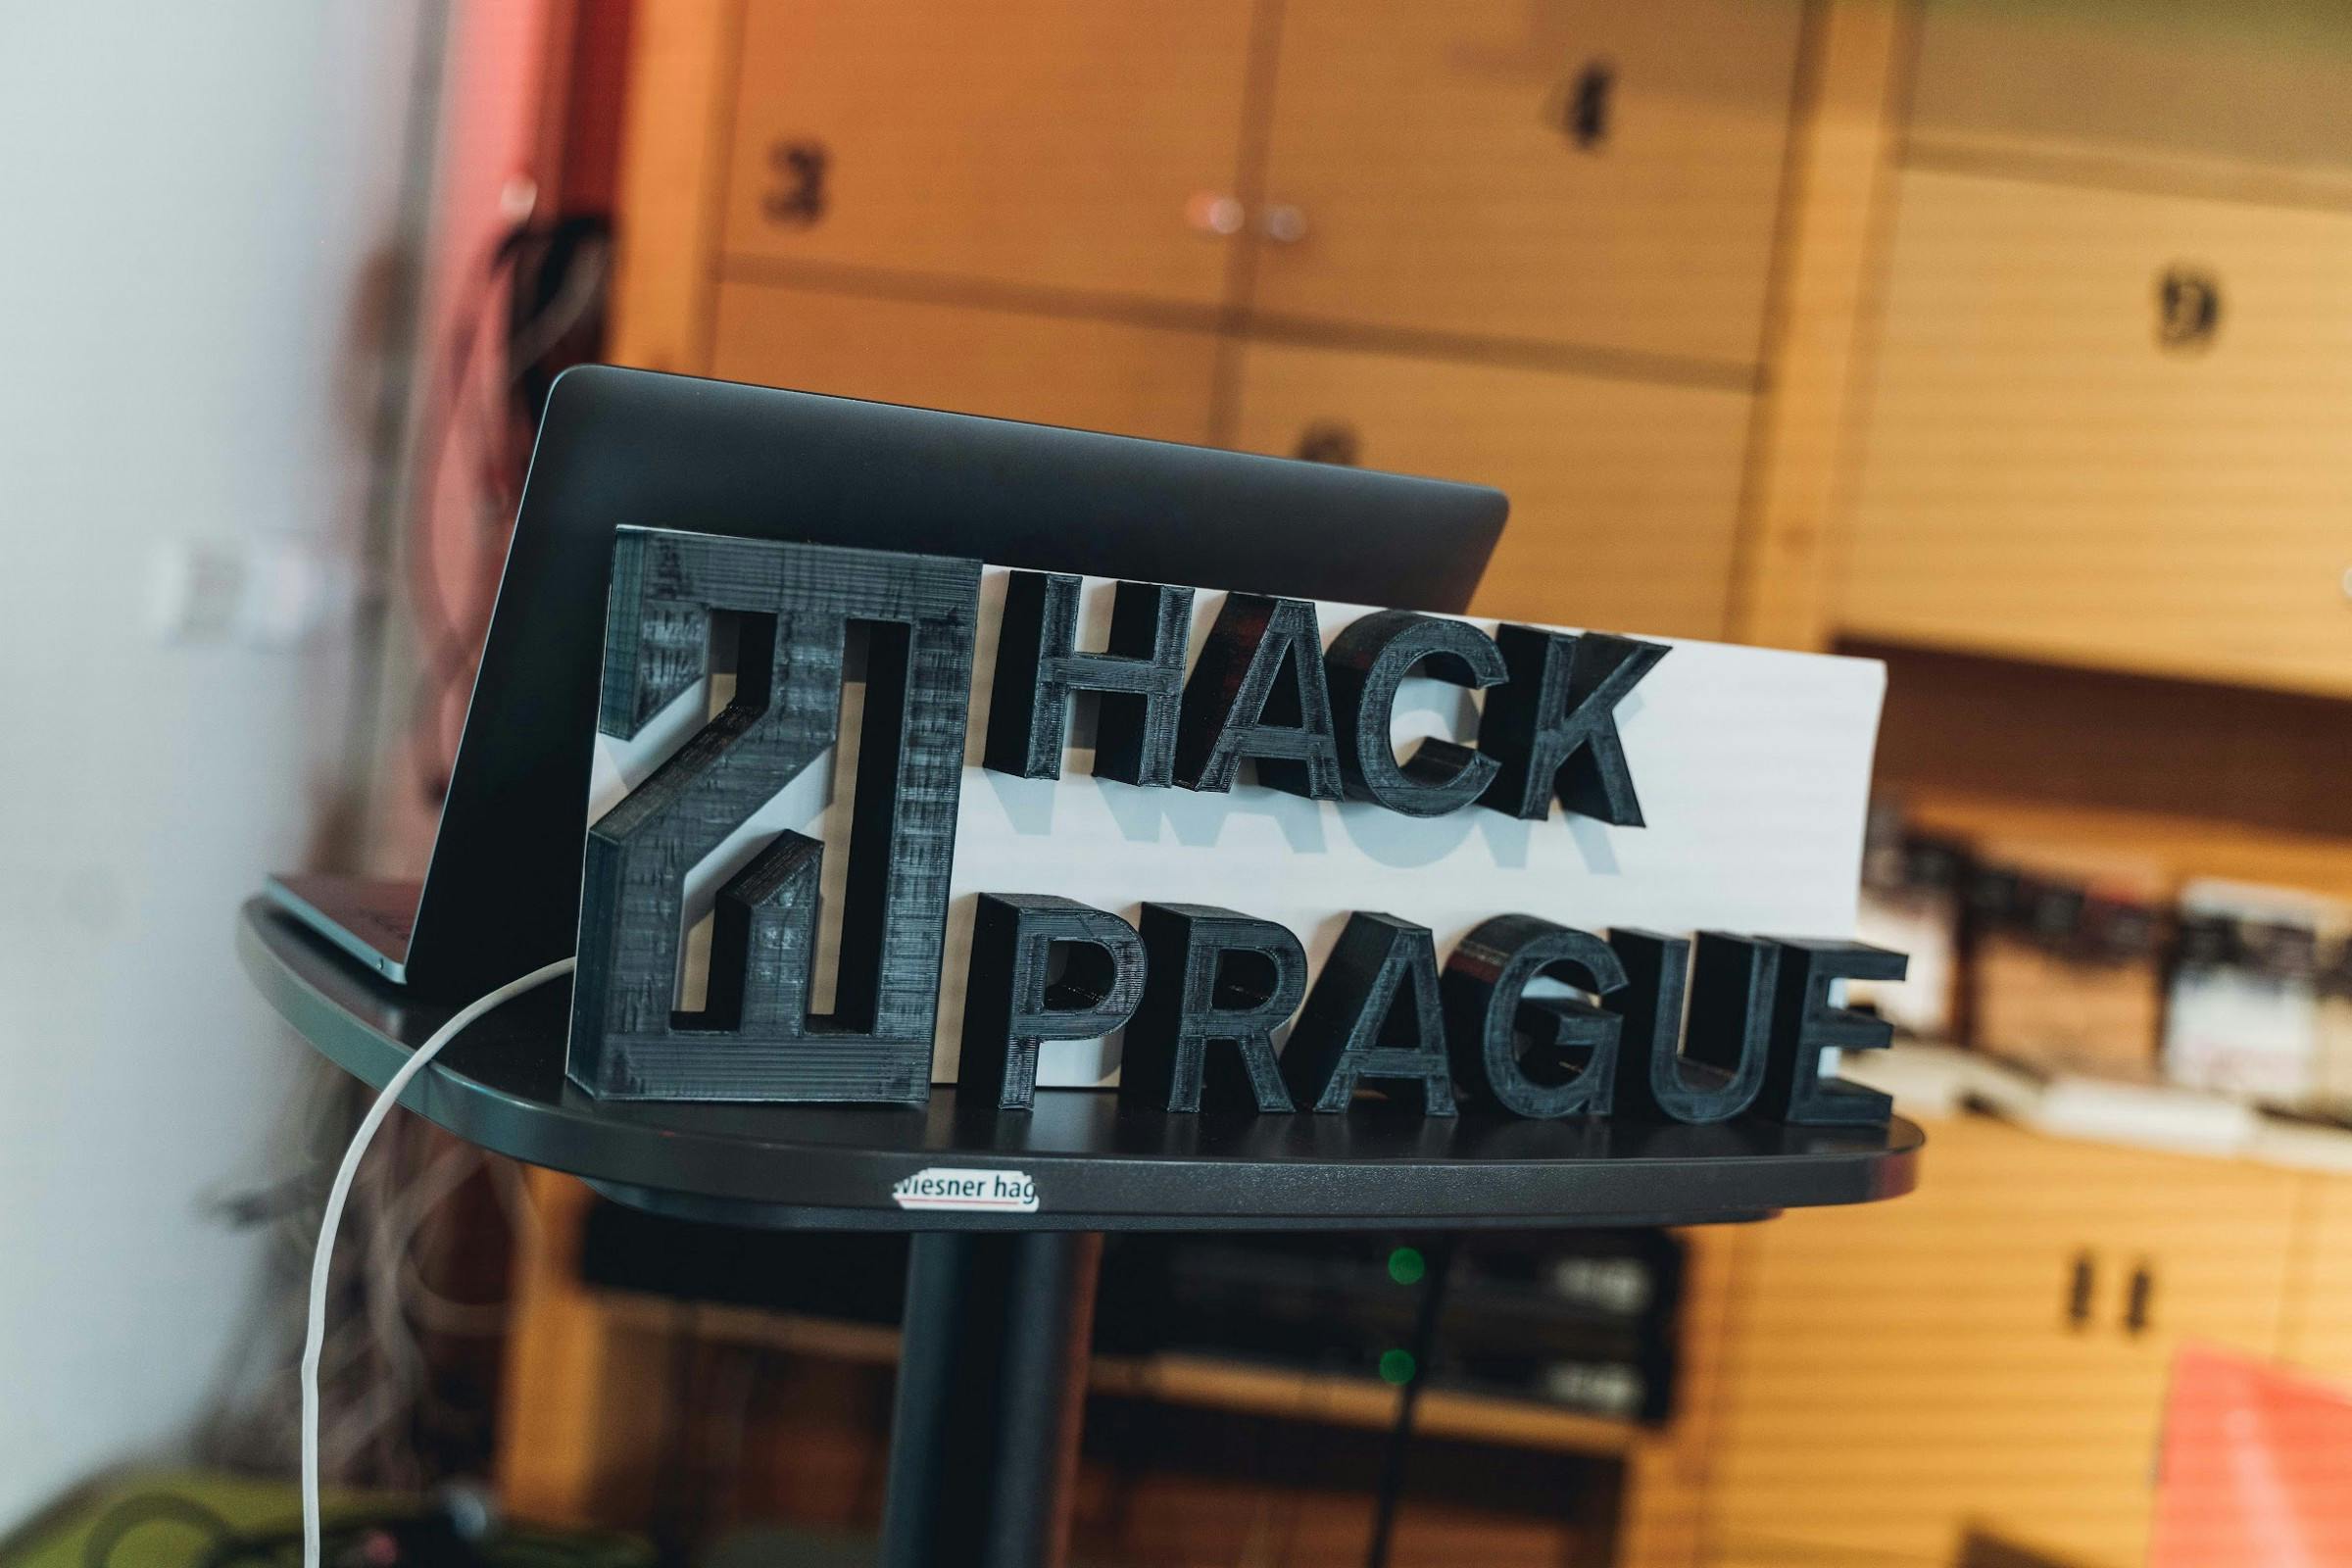 HackPrague logo from 3D printer